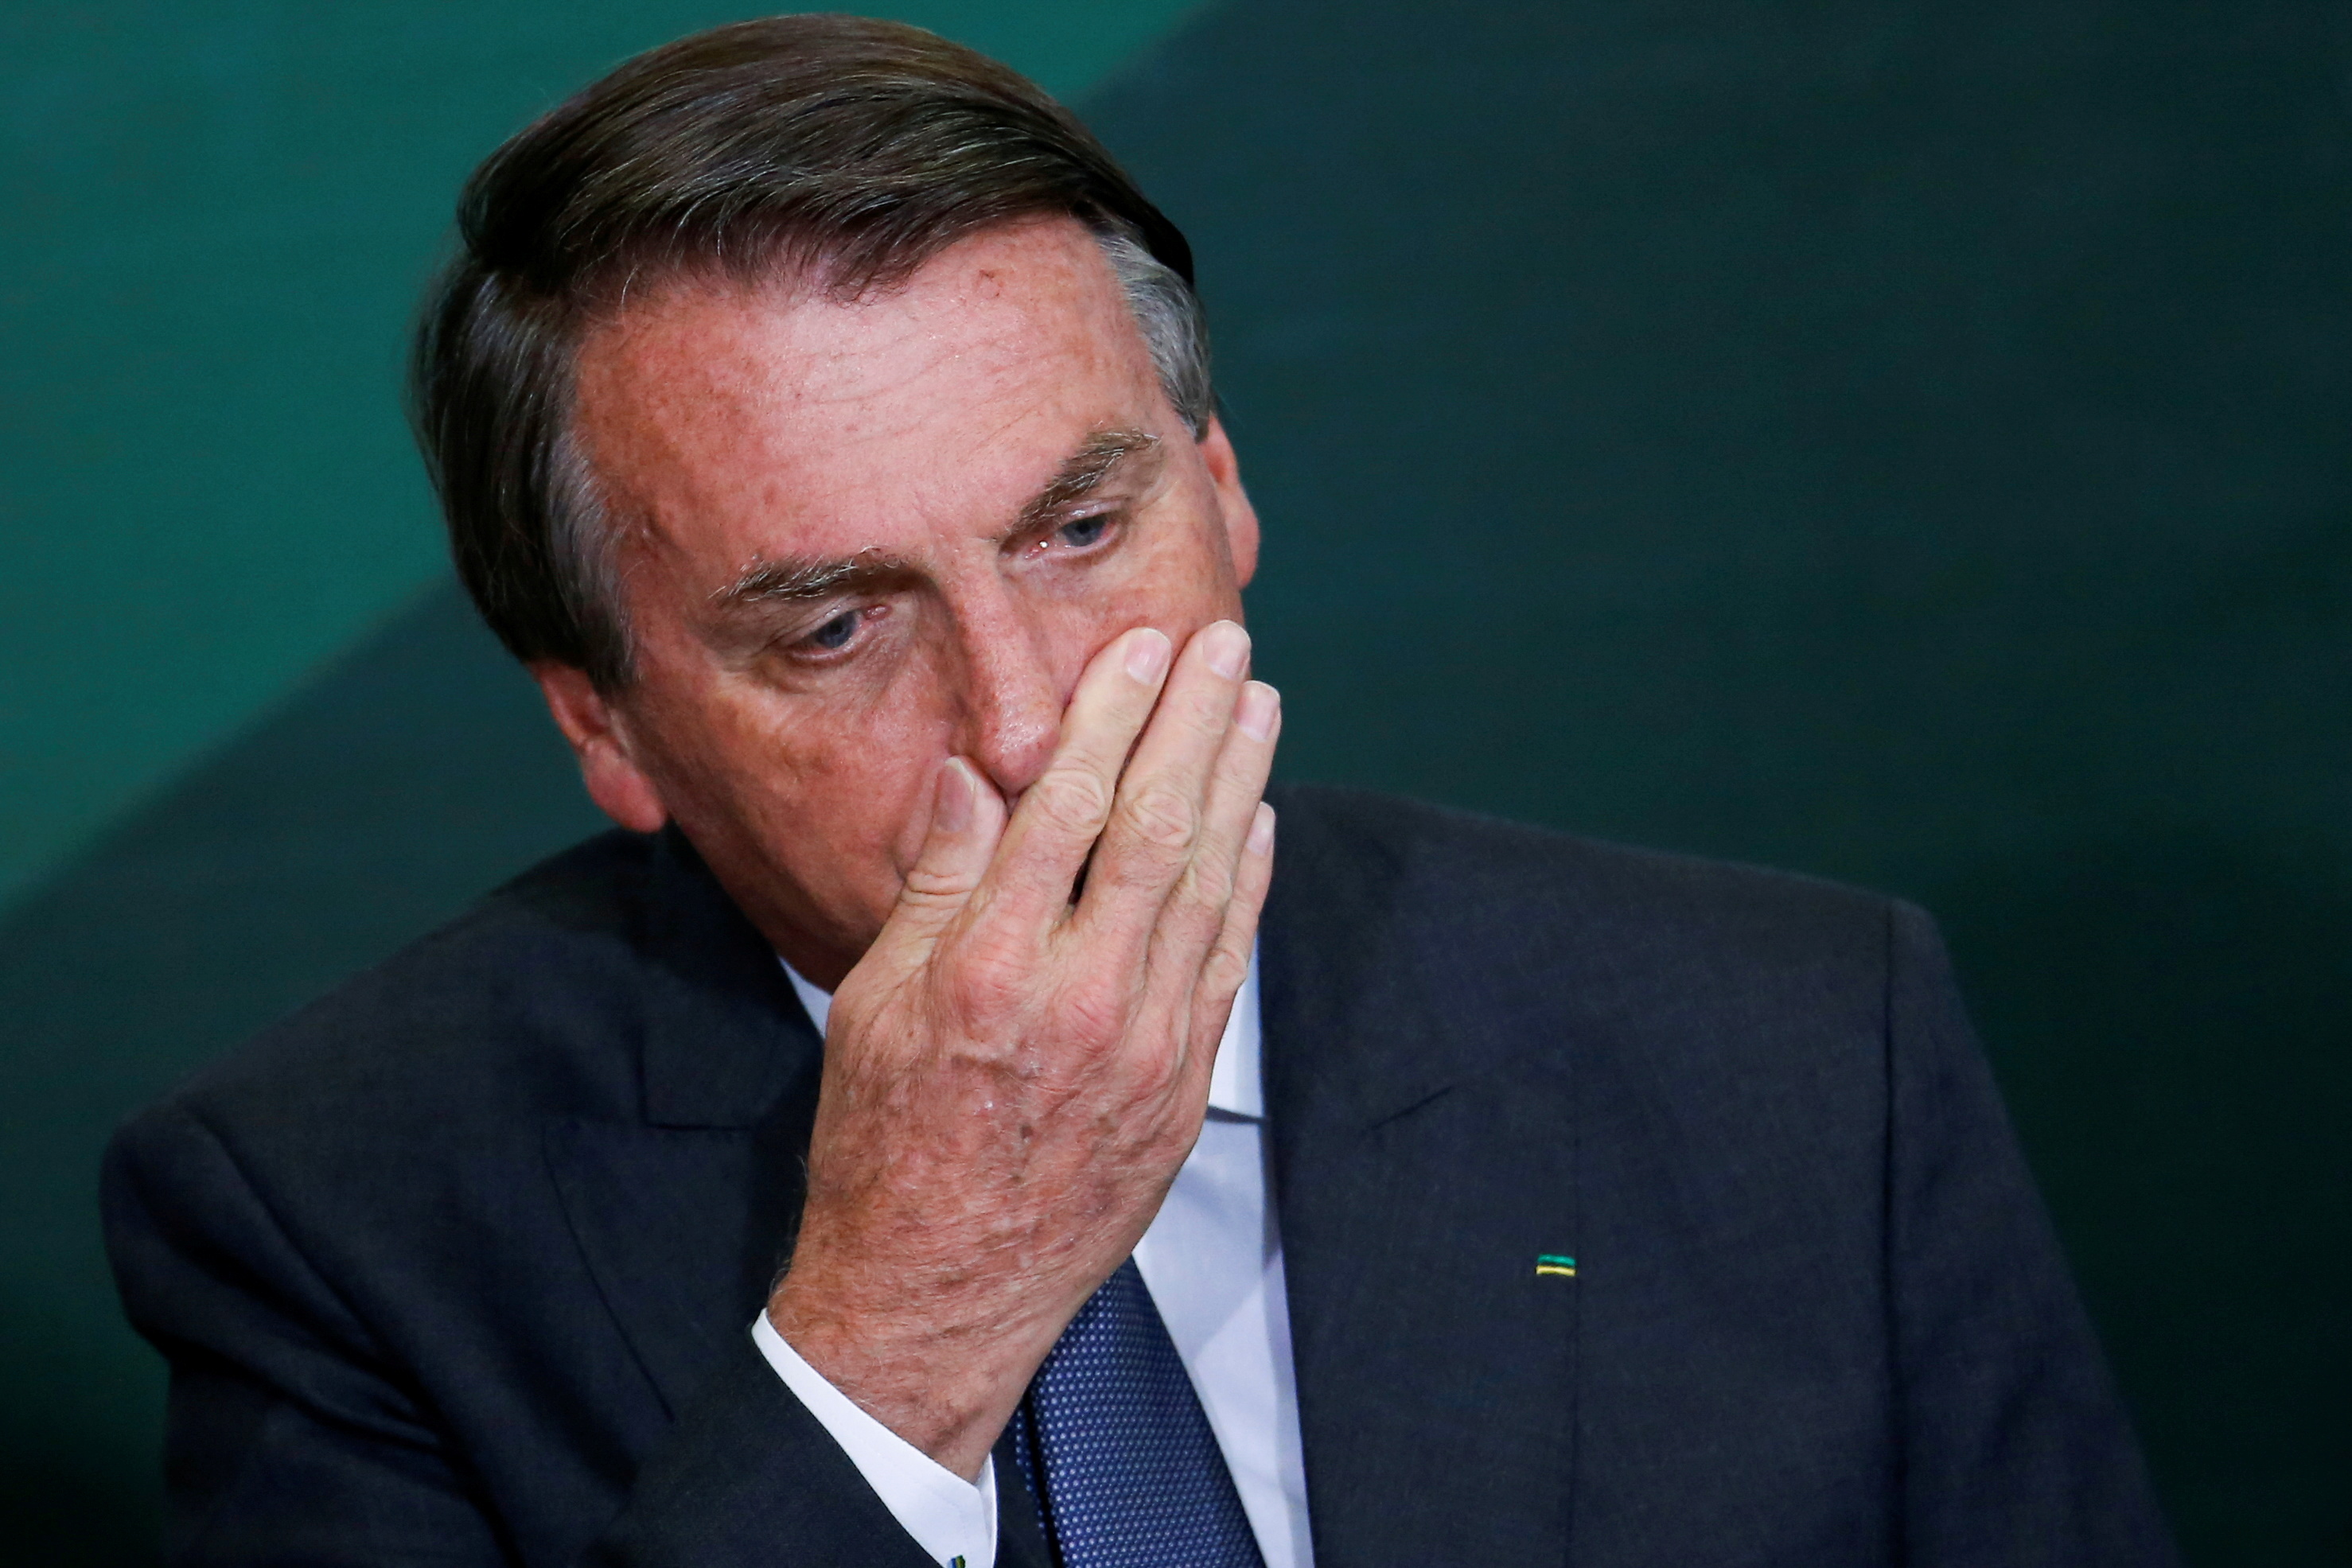 Bolsonaro es investigado por vincular la vacuna anti-Covid con el sida